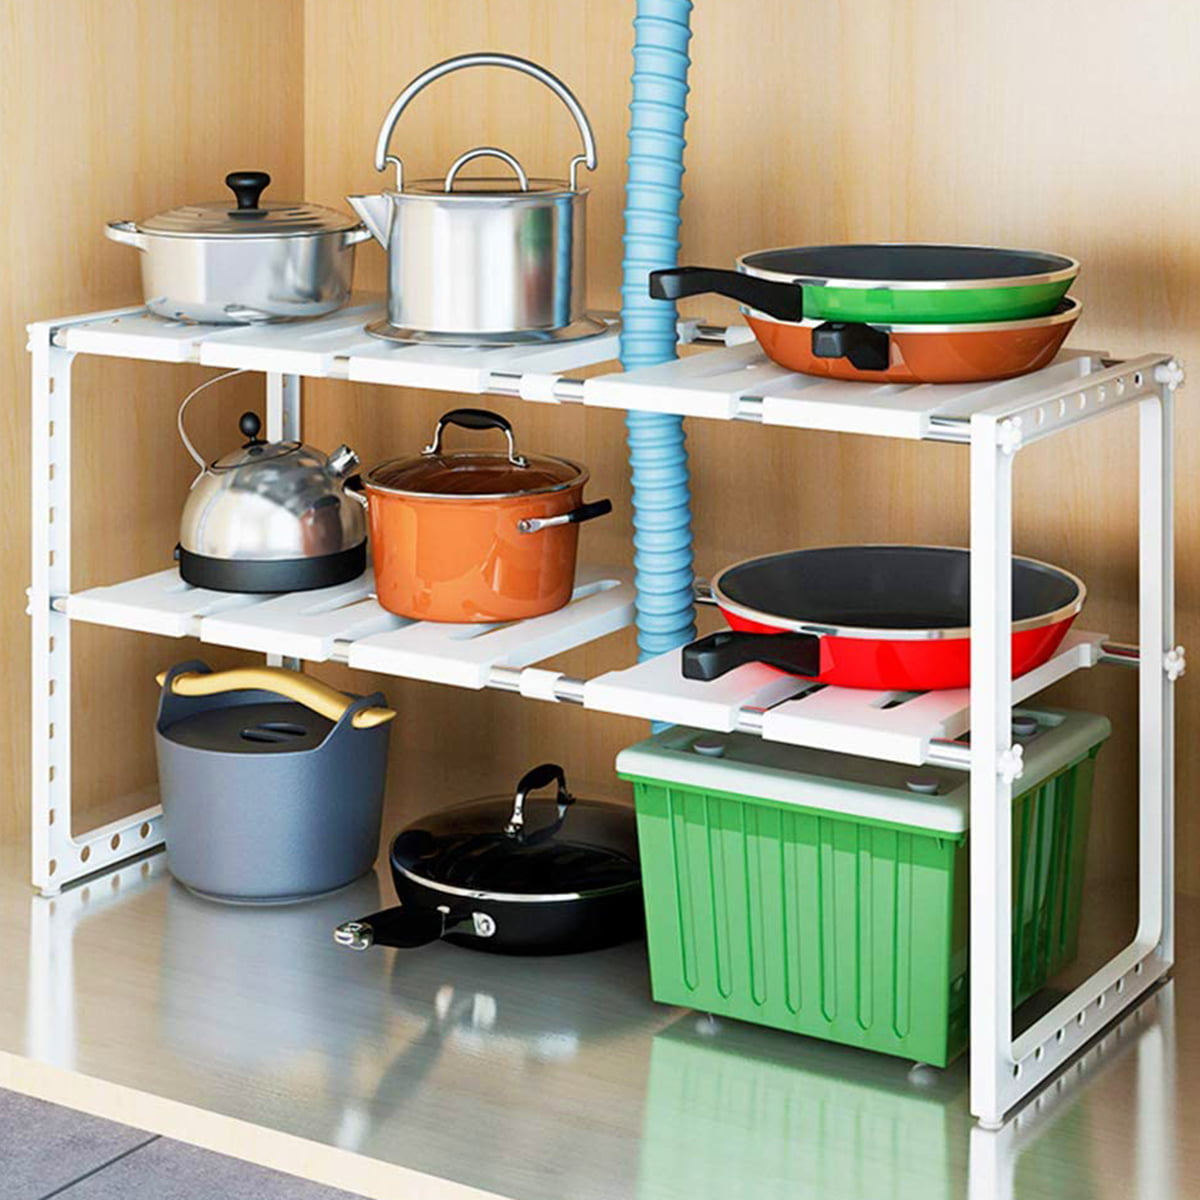 2-Tier Sink Rack Under Cabinet Organizer Storage Expandable Kitchen Shelf Holder 